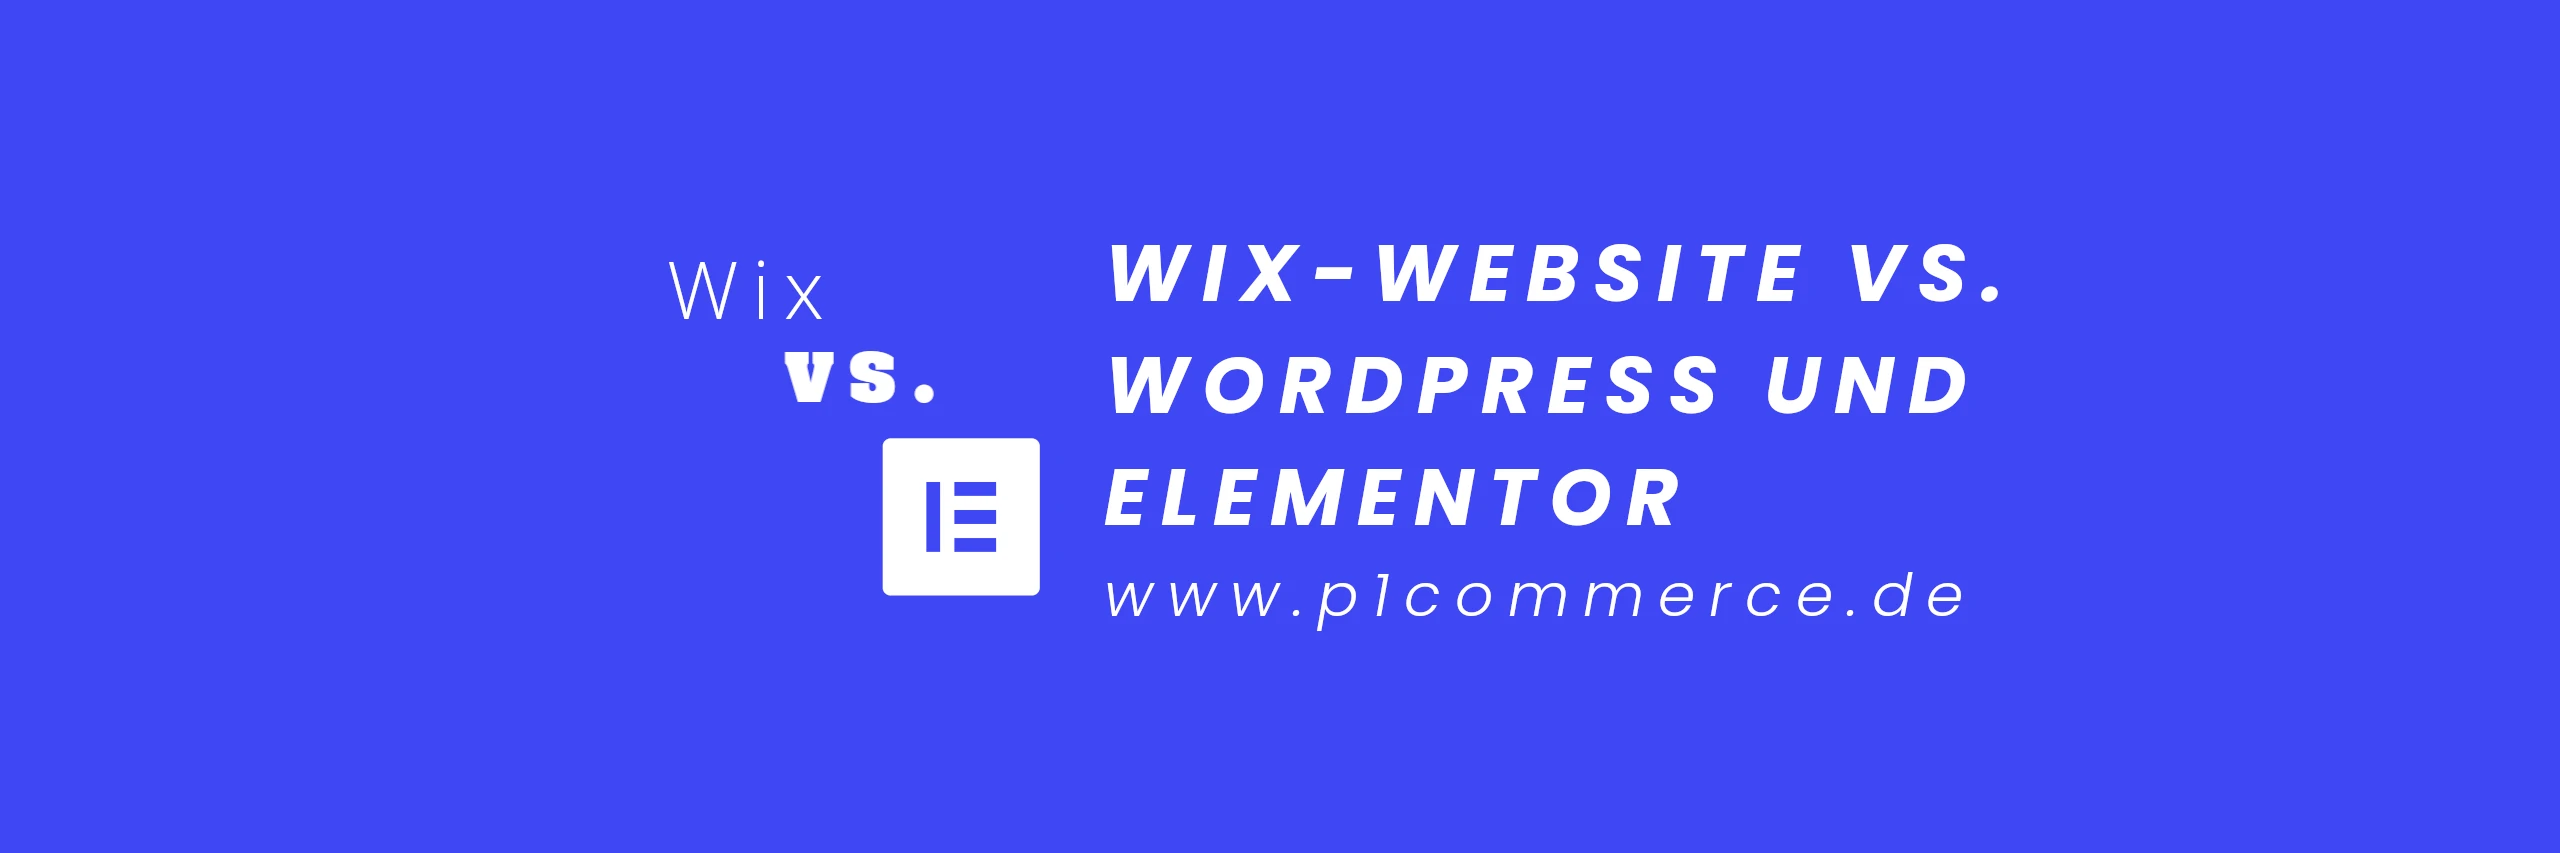 Wix Website im Vergleich zu WordPress und Elementor